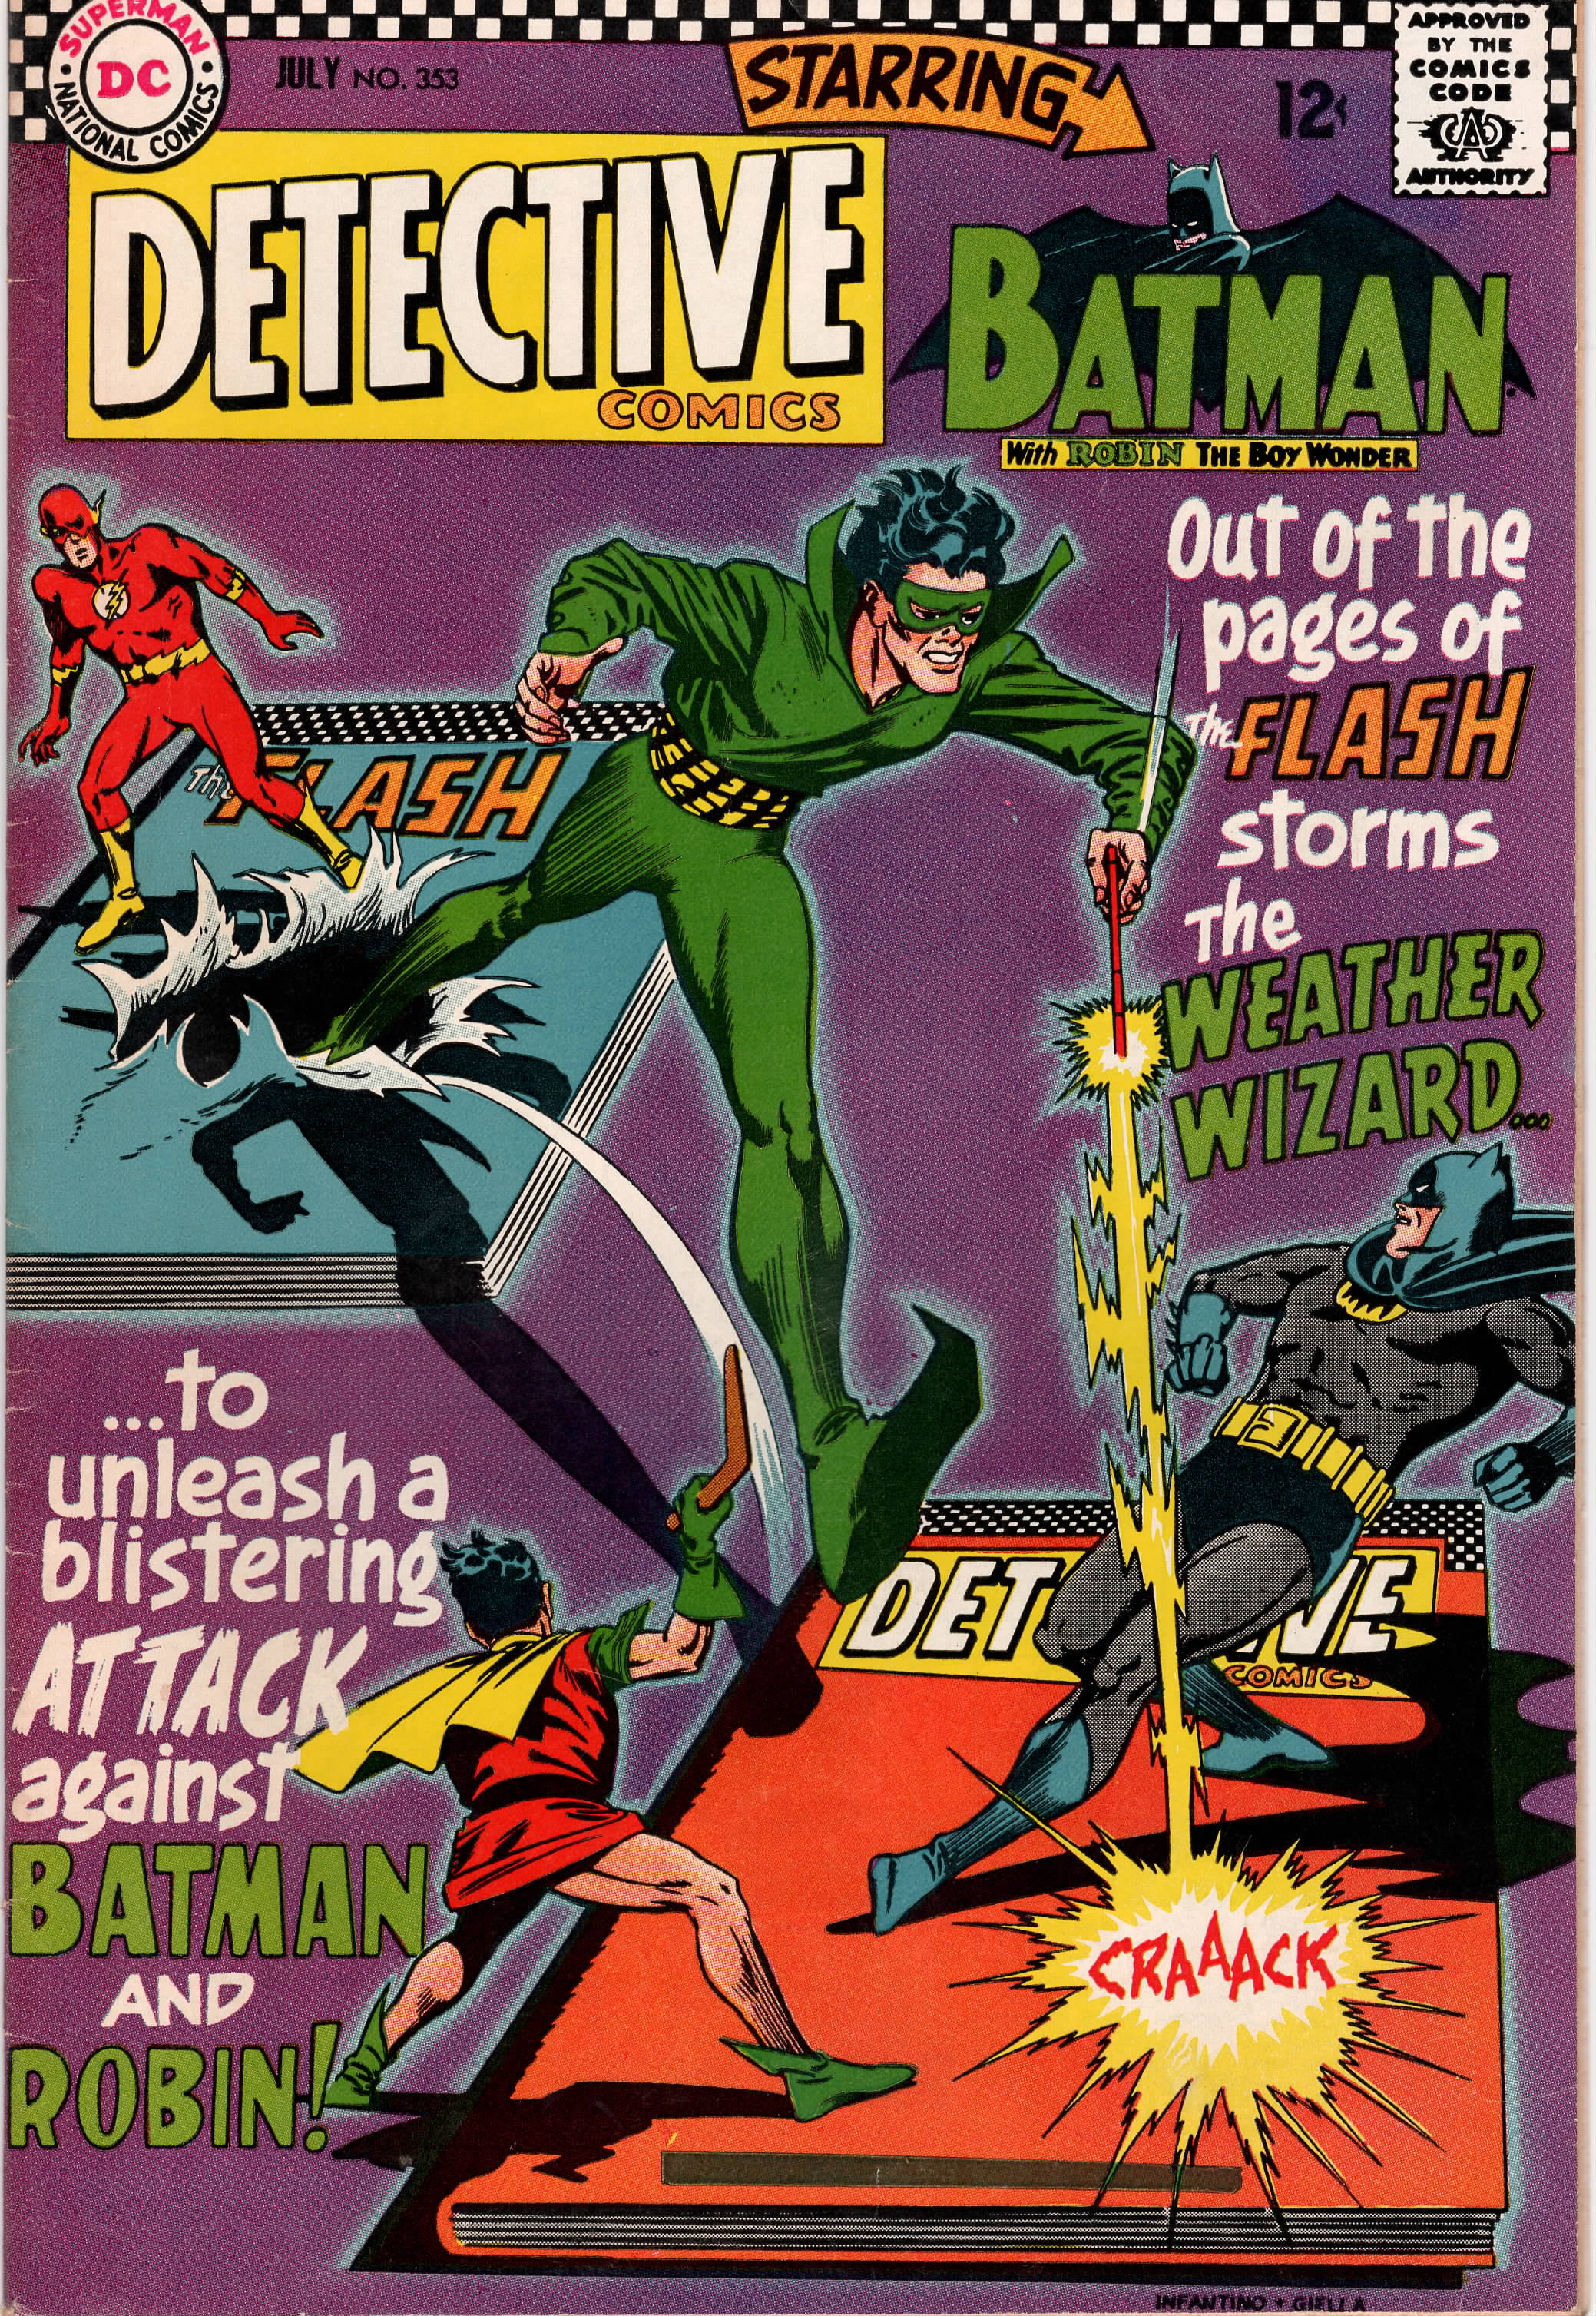 Detective Comics #0353